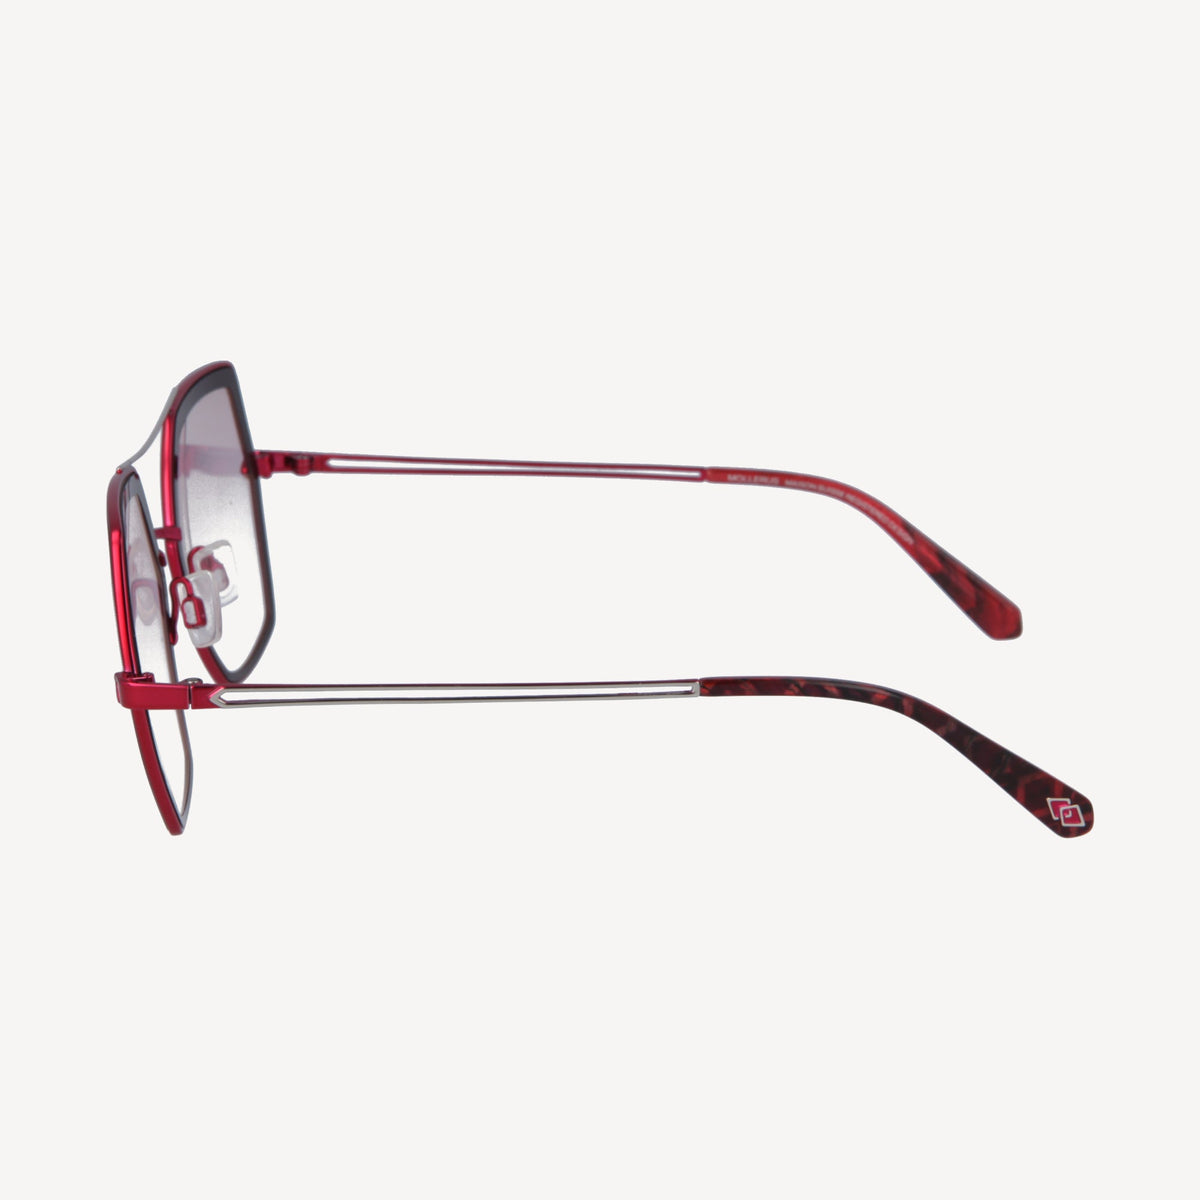 BALFRIN | Sonnenbrille rot - von der Seite